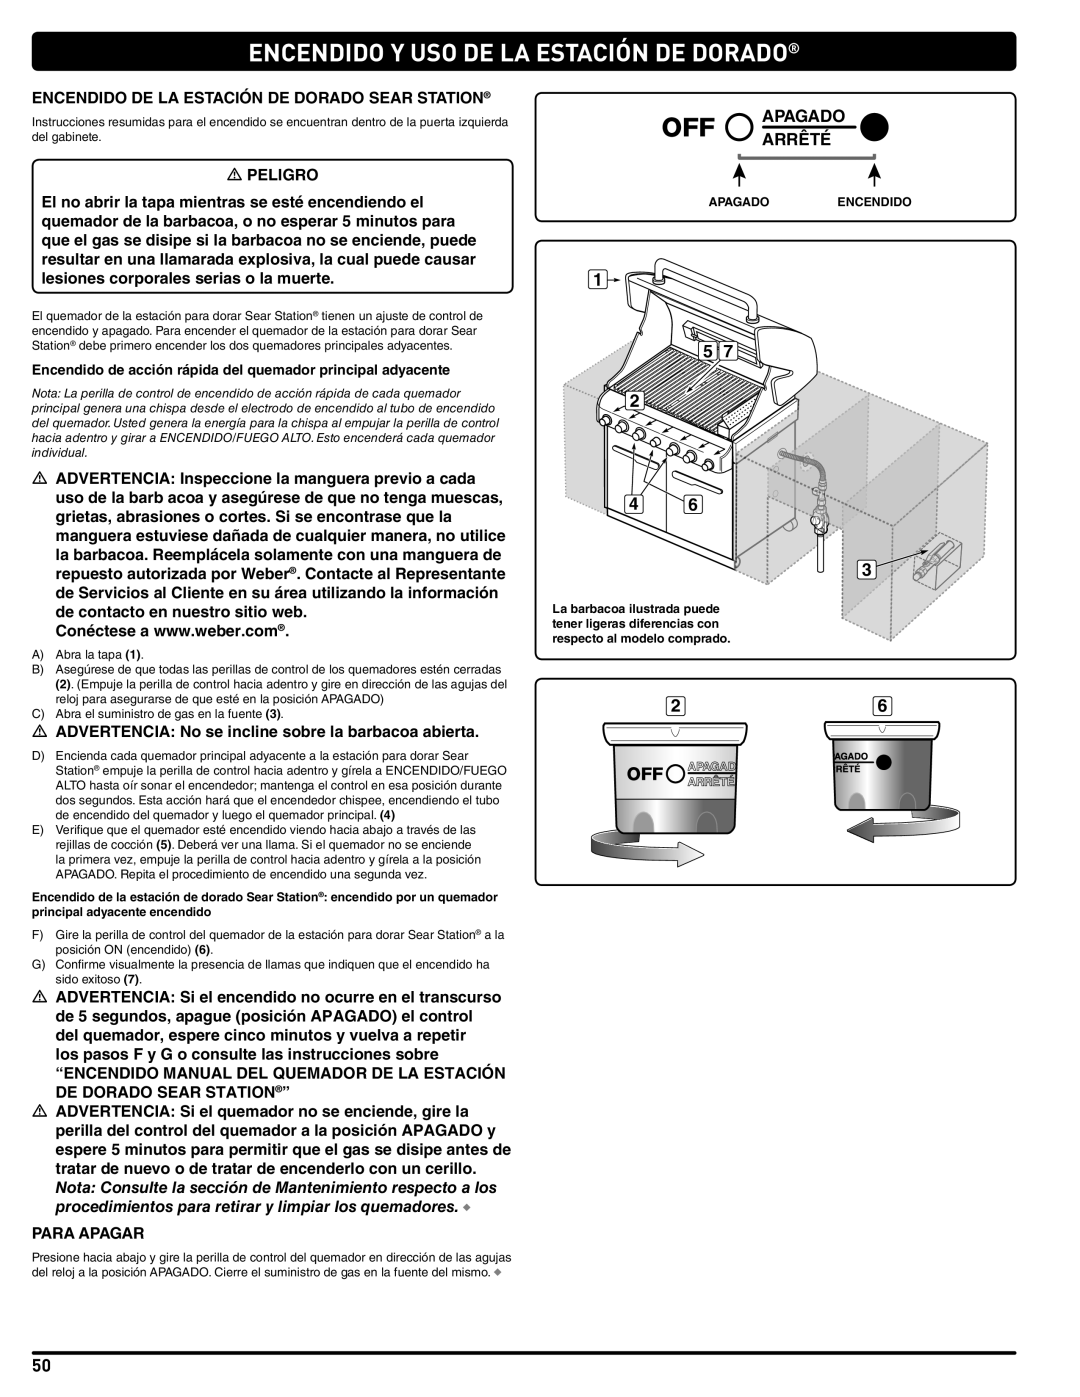 Weber 56576 manual Encendido Y Uso De La Estación De Dorado, Apagado Arrêté 